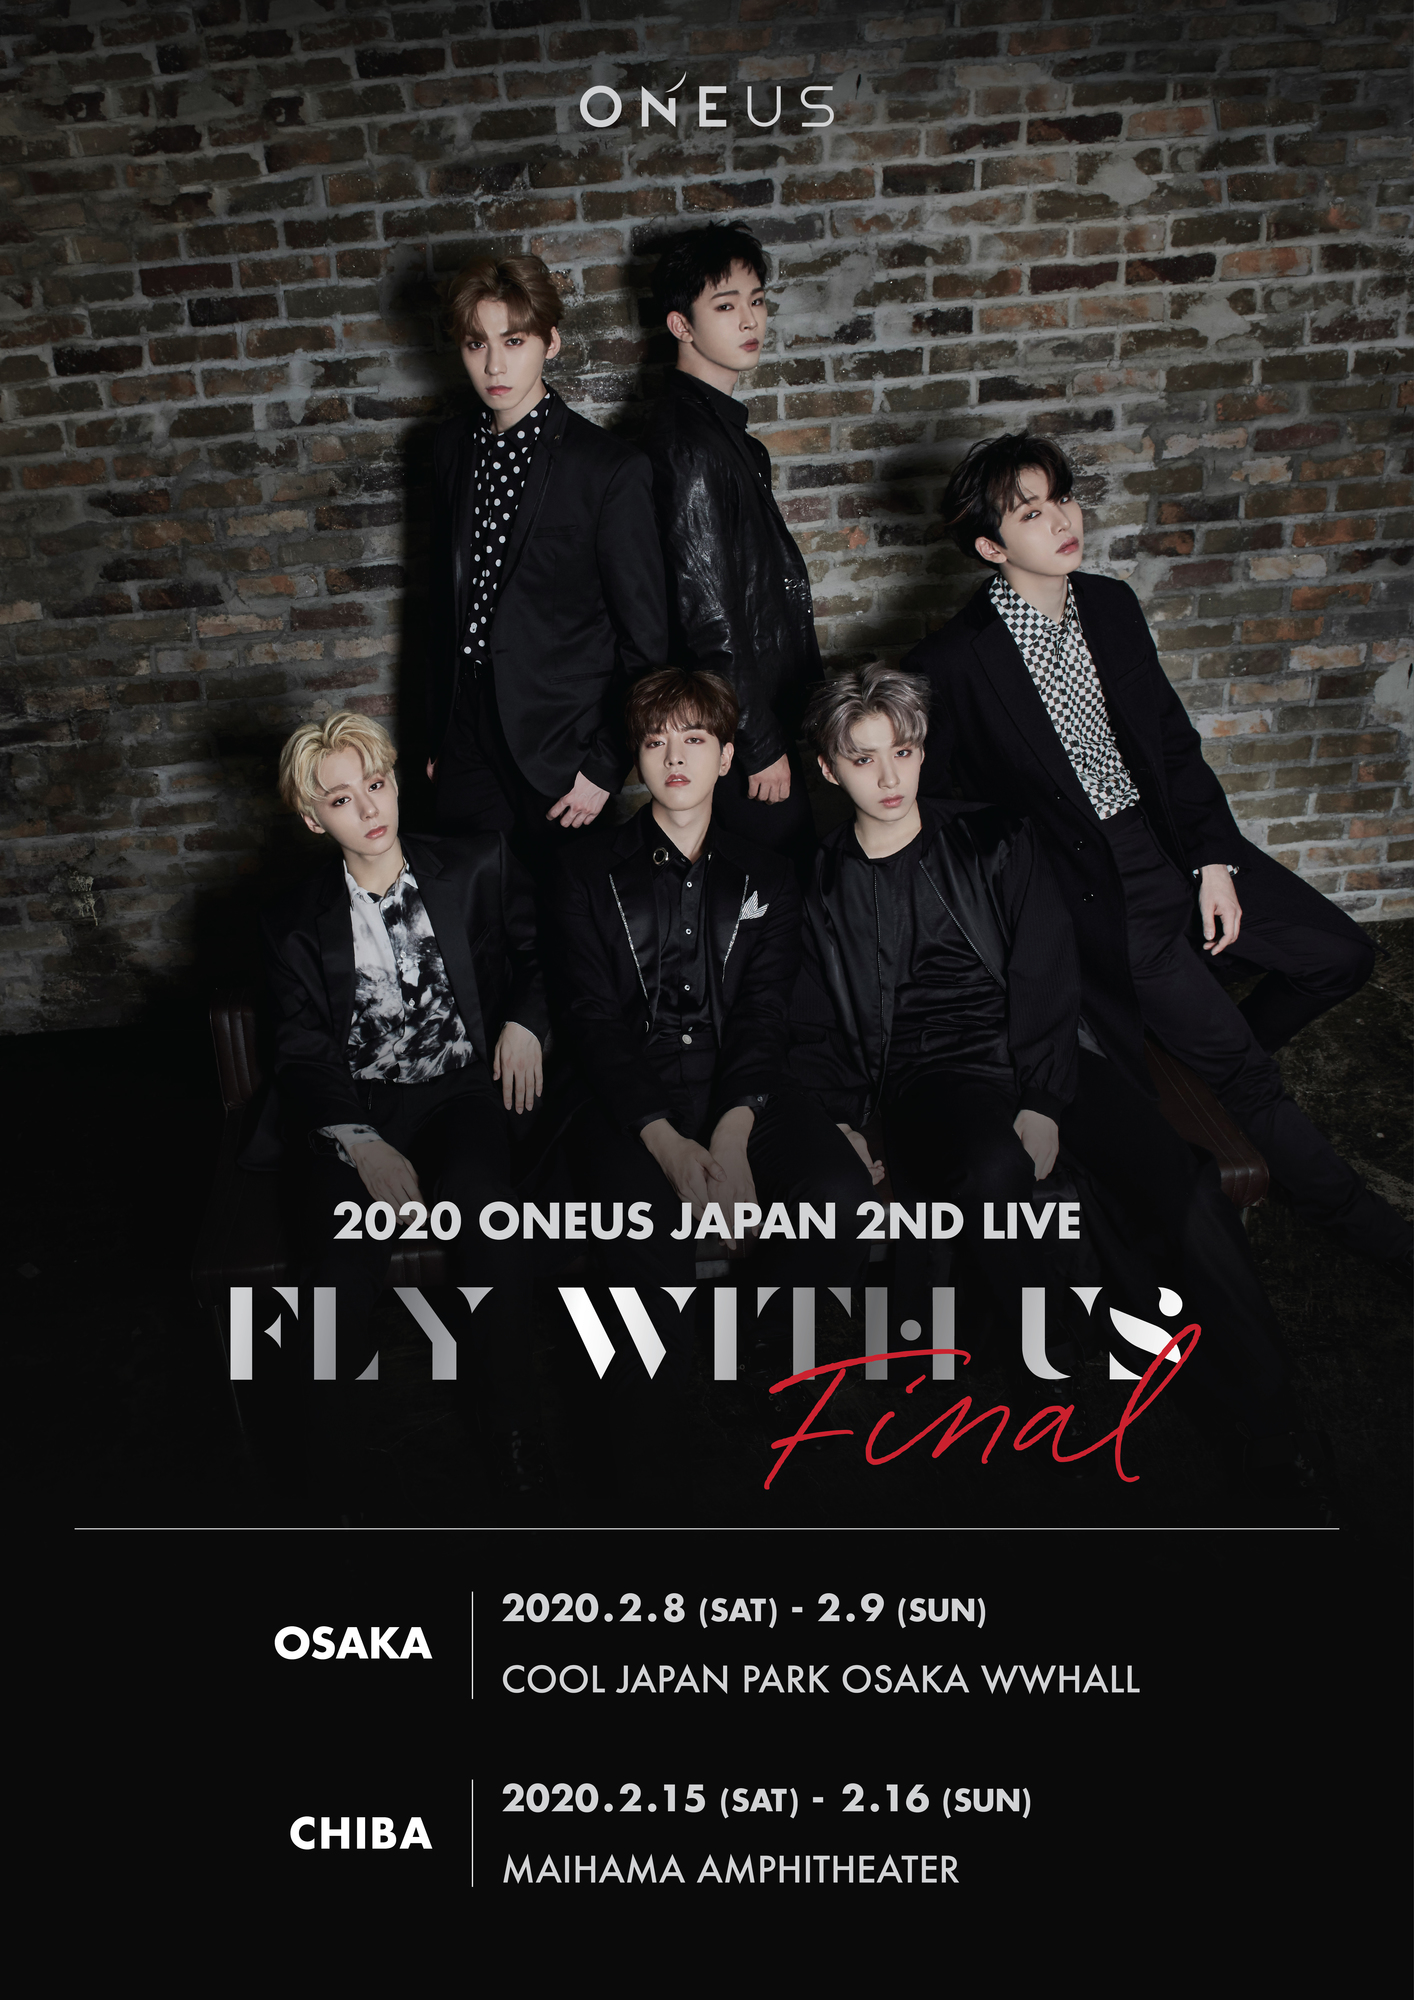 年2月 待望の Oneus Japan 2nd Live Fly With Us Final 開催決定 Oneus Japan Official Site